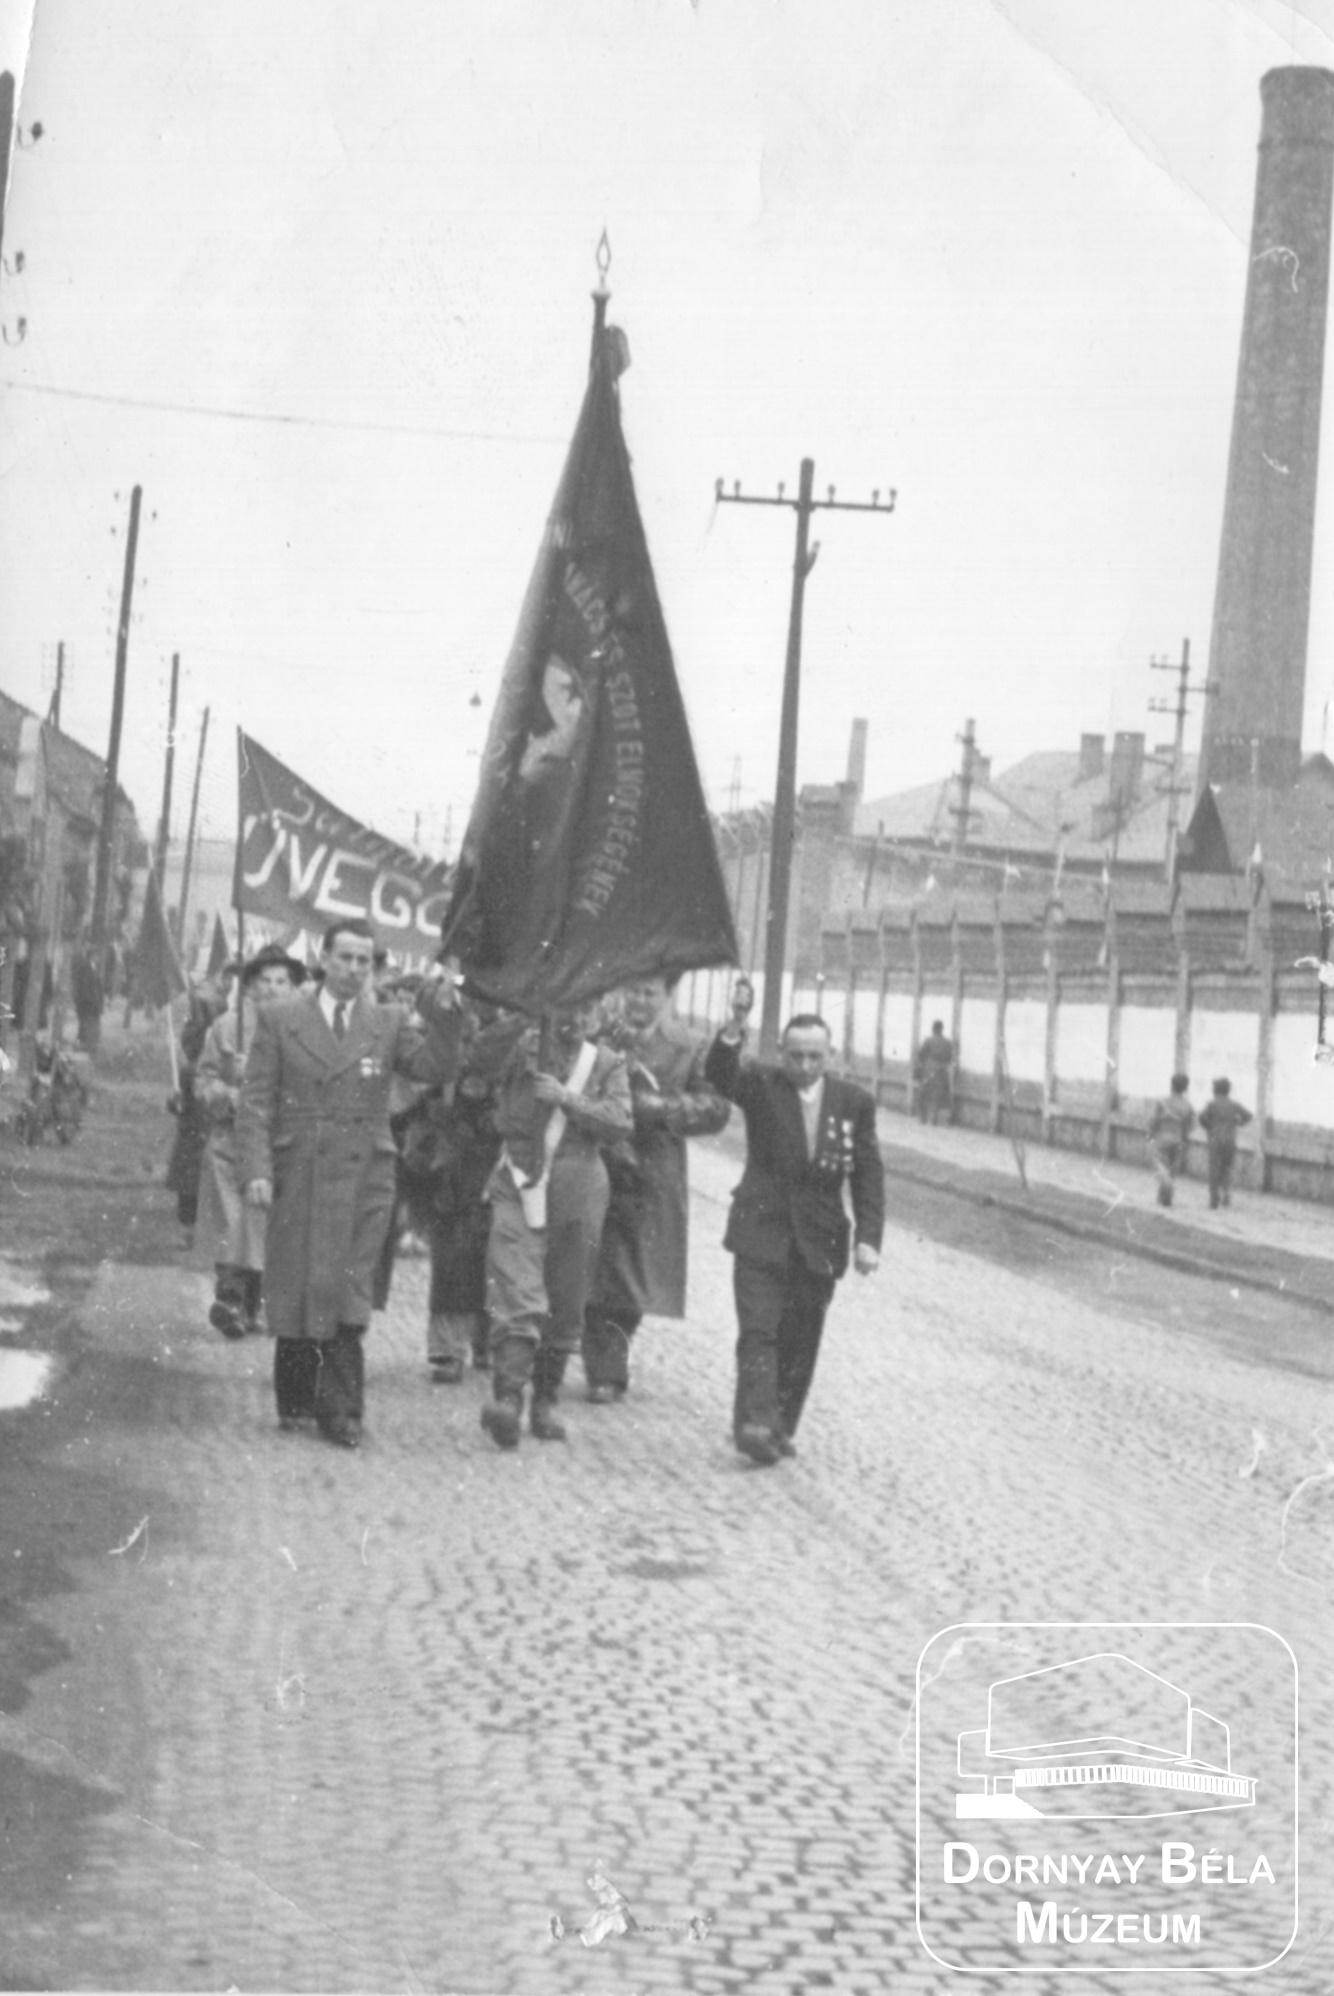 Salgótarján. Üveggyári dolgozók május 1-i felvonulása a Tűzhelygyár előtti főút szakaszon (Dornyay Béla Múzeum, Salgótarján CC BY-NC-SA)